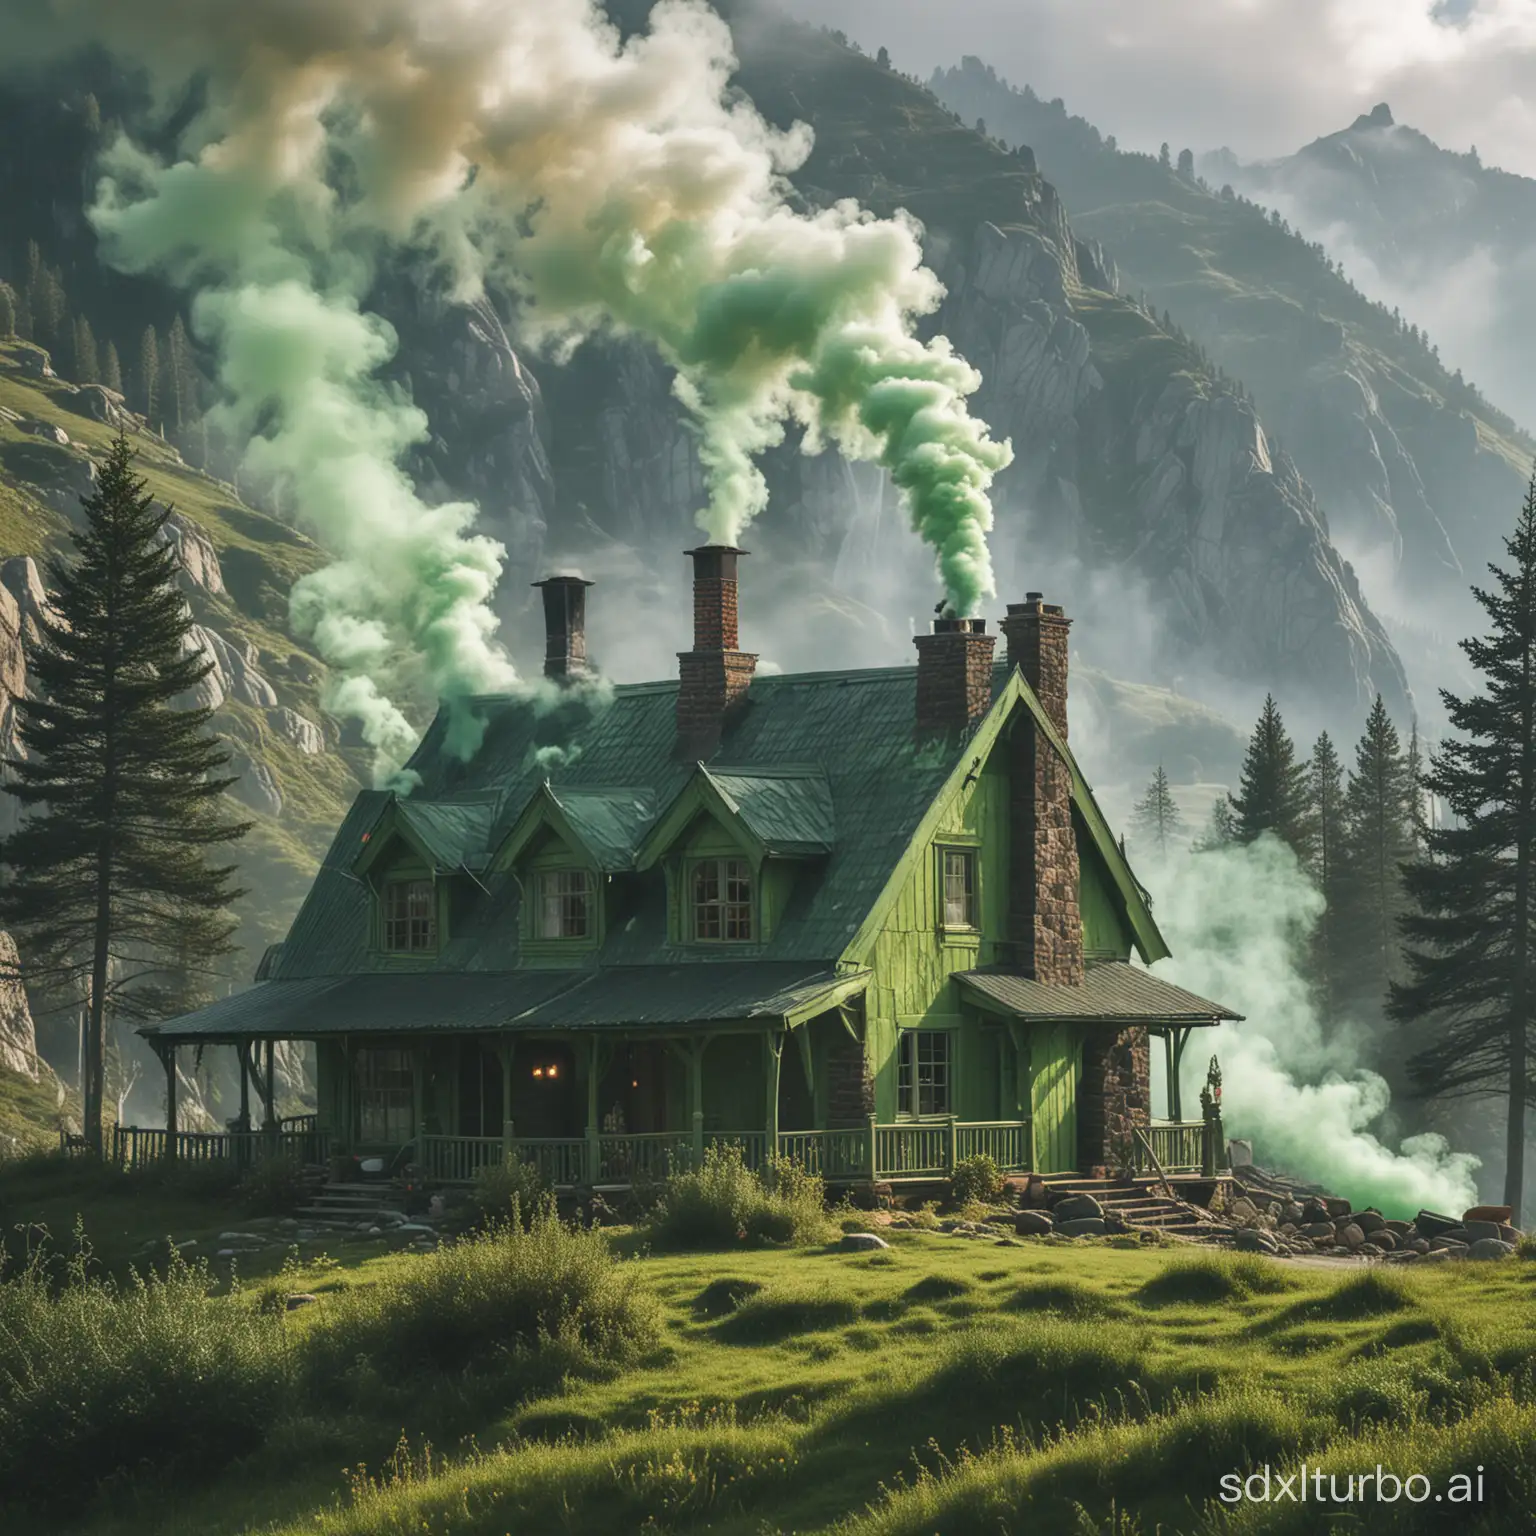 imagen de una casa en la montaña con dos chimeneas que sueltan humo verde mientras el grinch escala la montaña